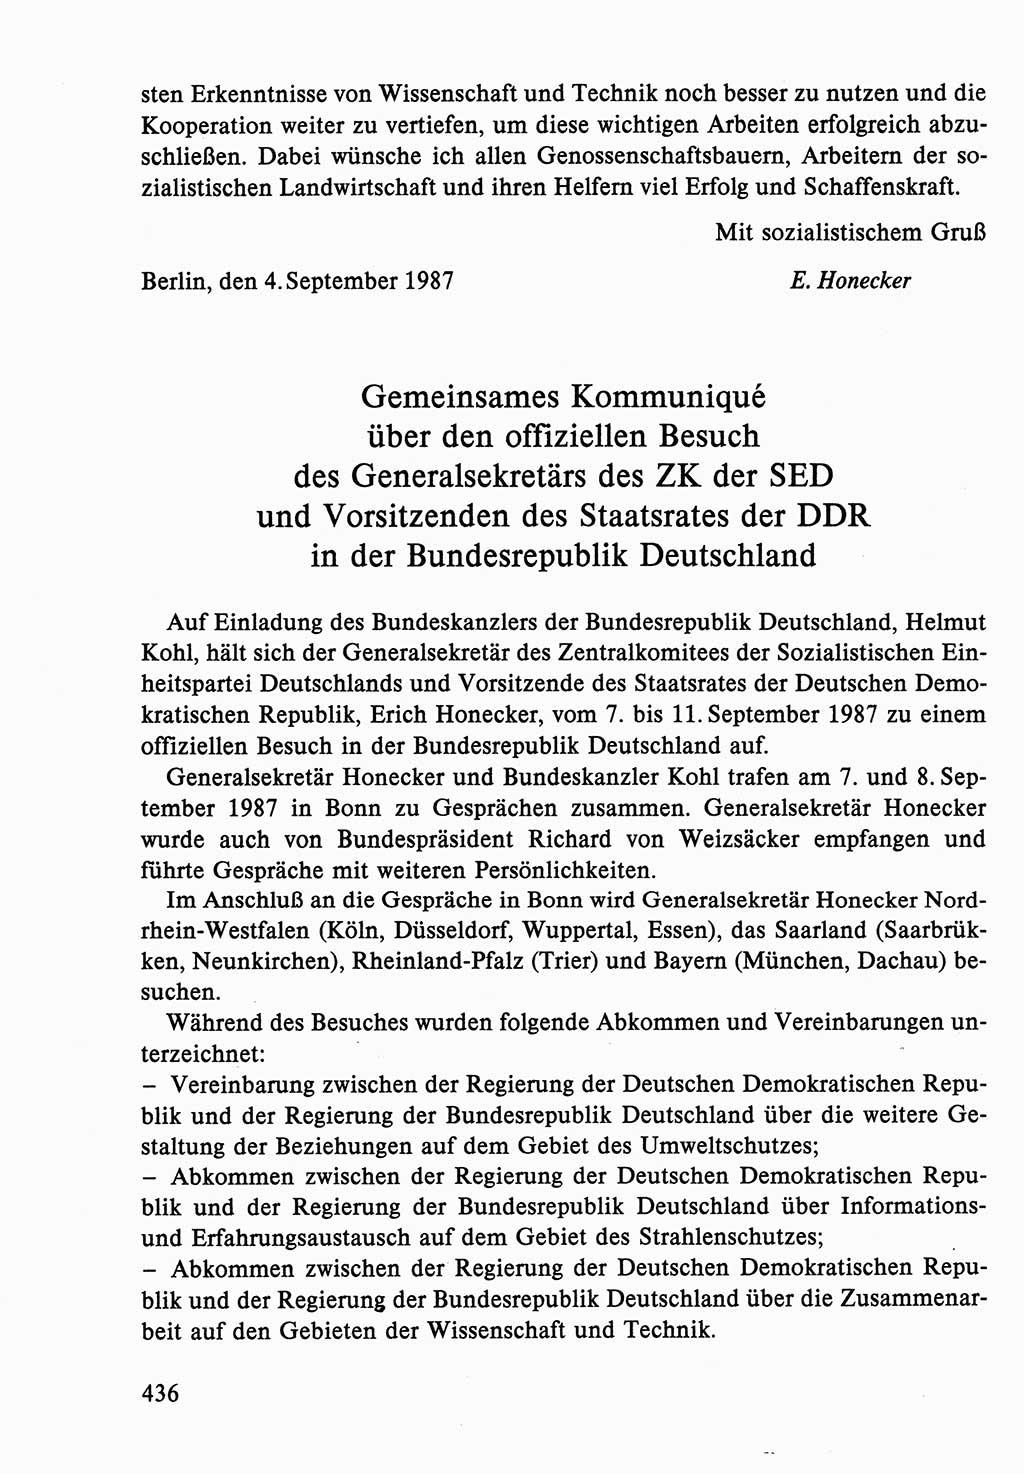 Dokumente der Sozialistischen Einheitspartei Deutschlands (SED) [Deutsche Demokratische Republik (DDR)] 1986-1987, Seite 436 (Dok. SED DDR 1986-1987, S. 436)